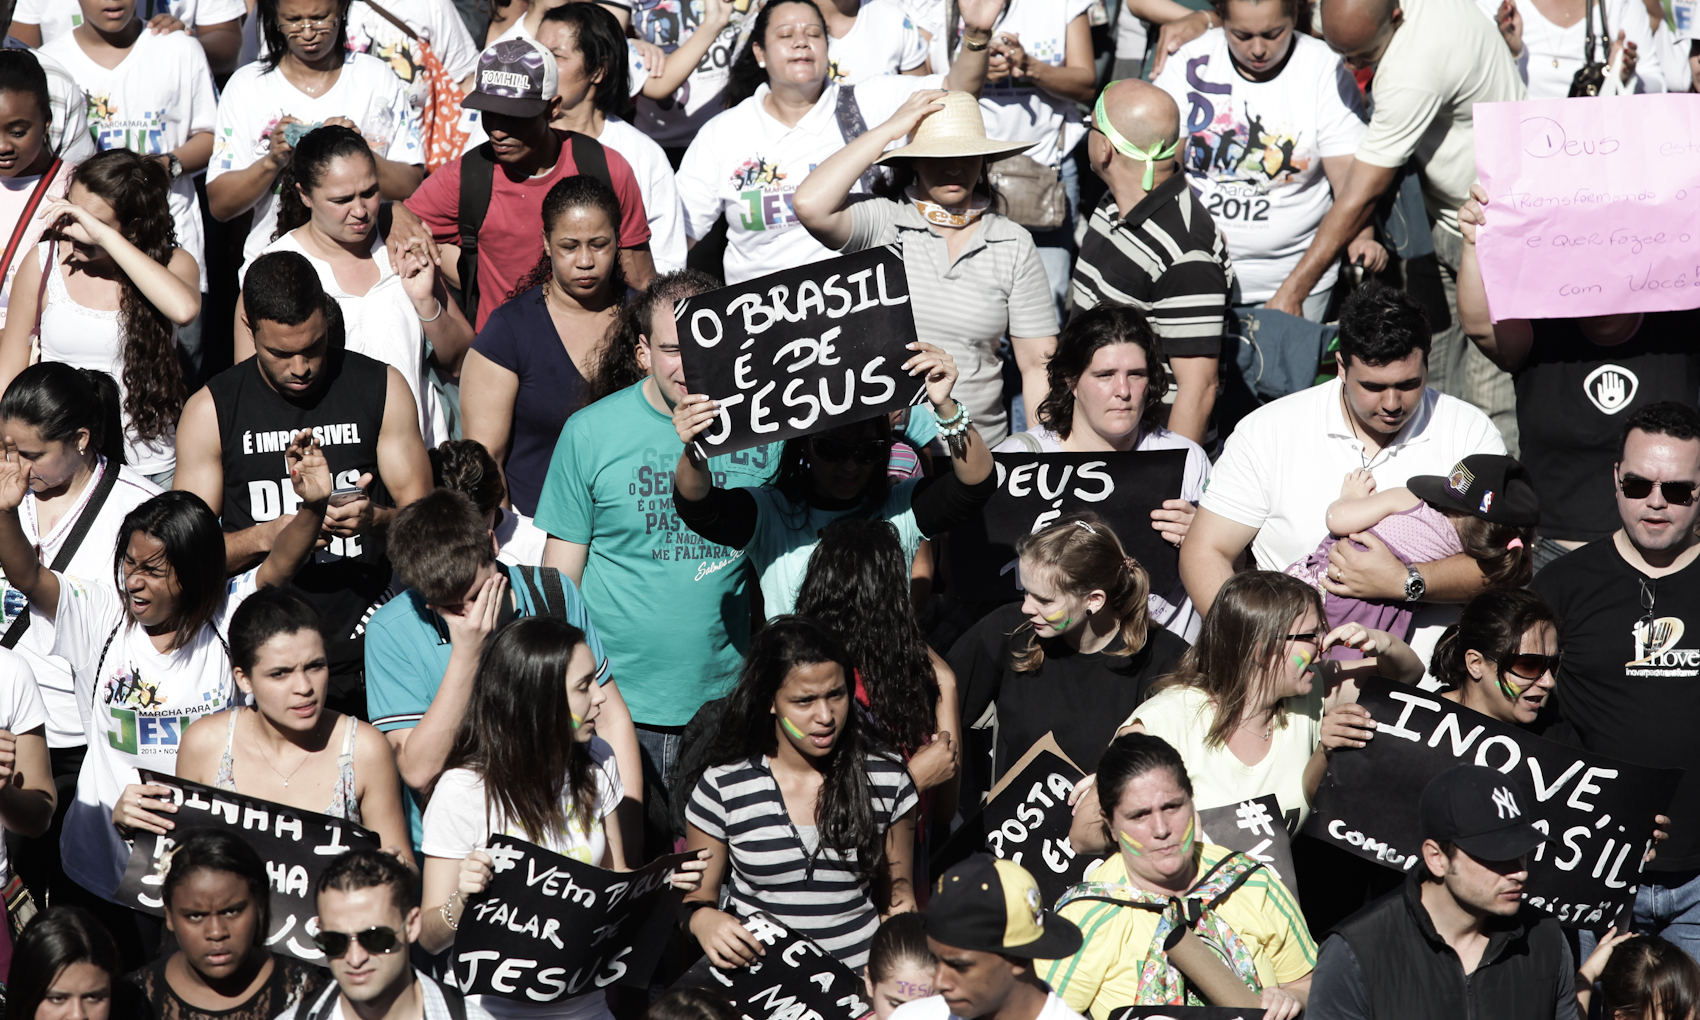 Pessoas carregam cartazes durante a Marcha para Jesus em São Paulo